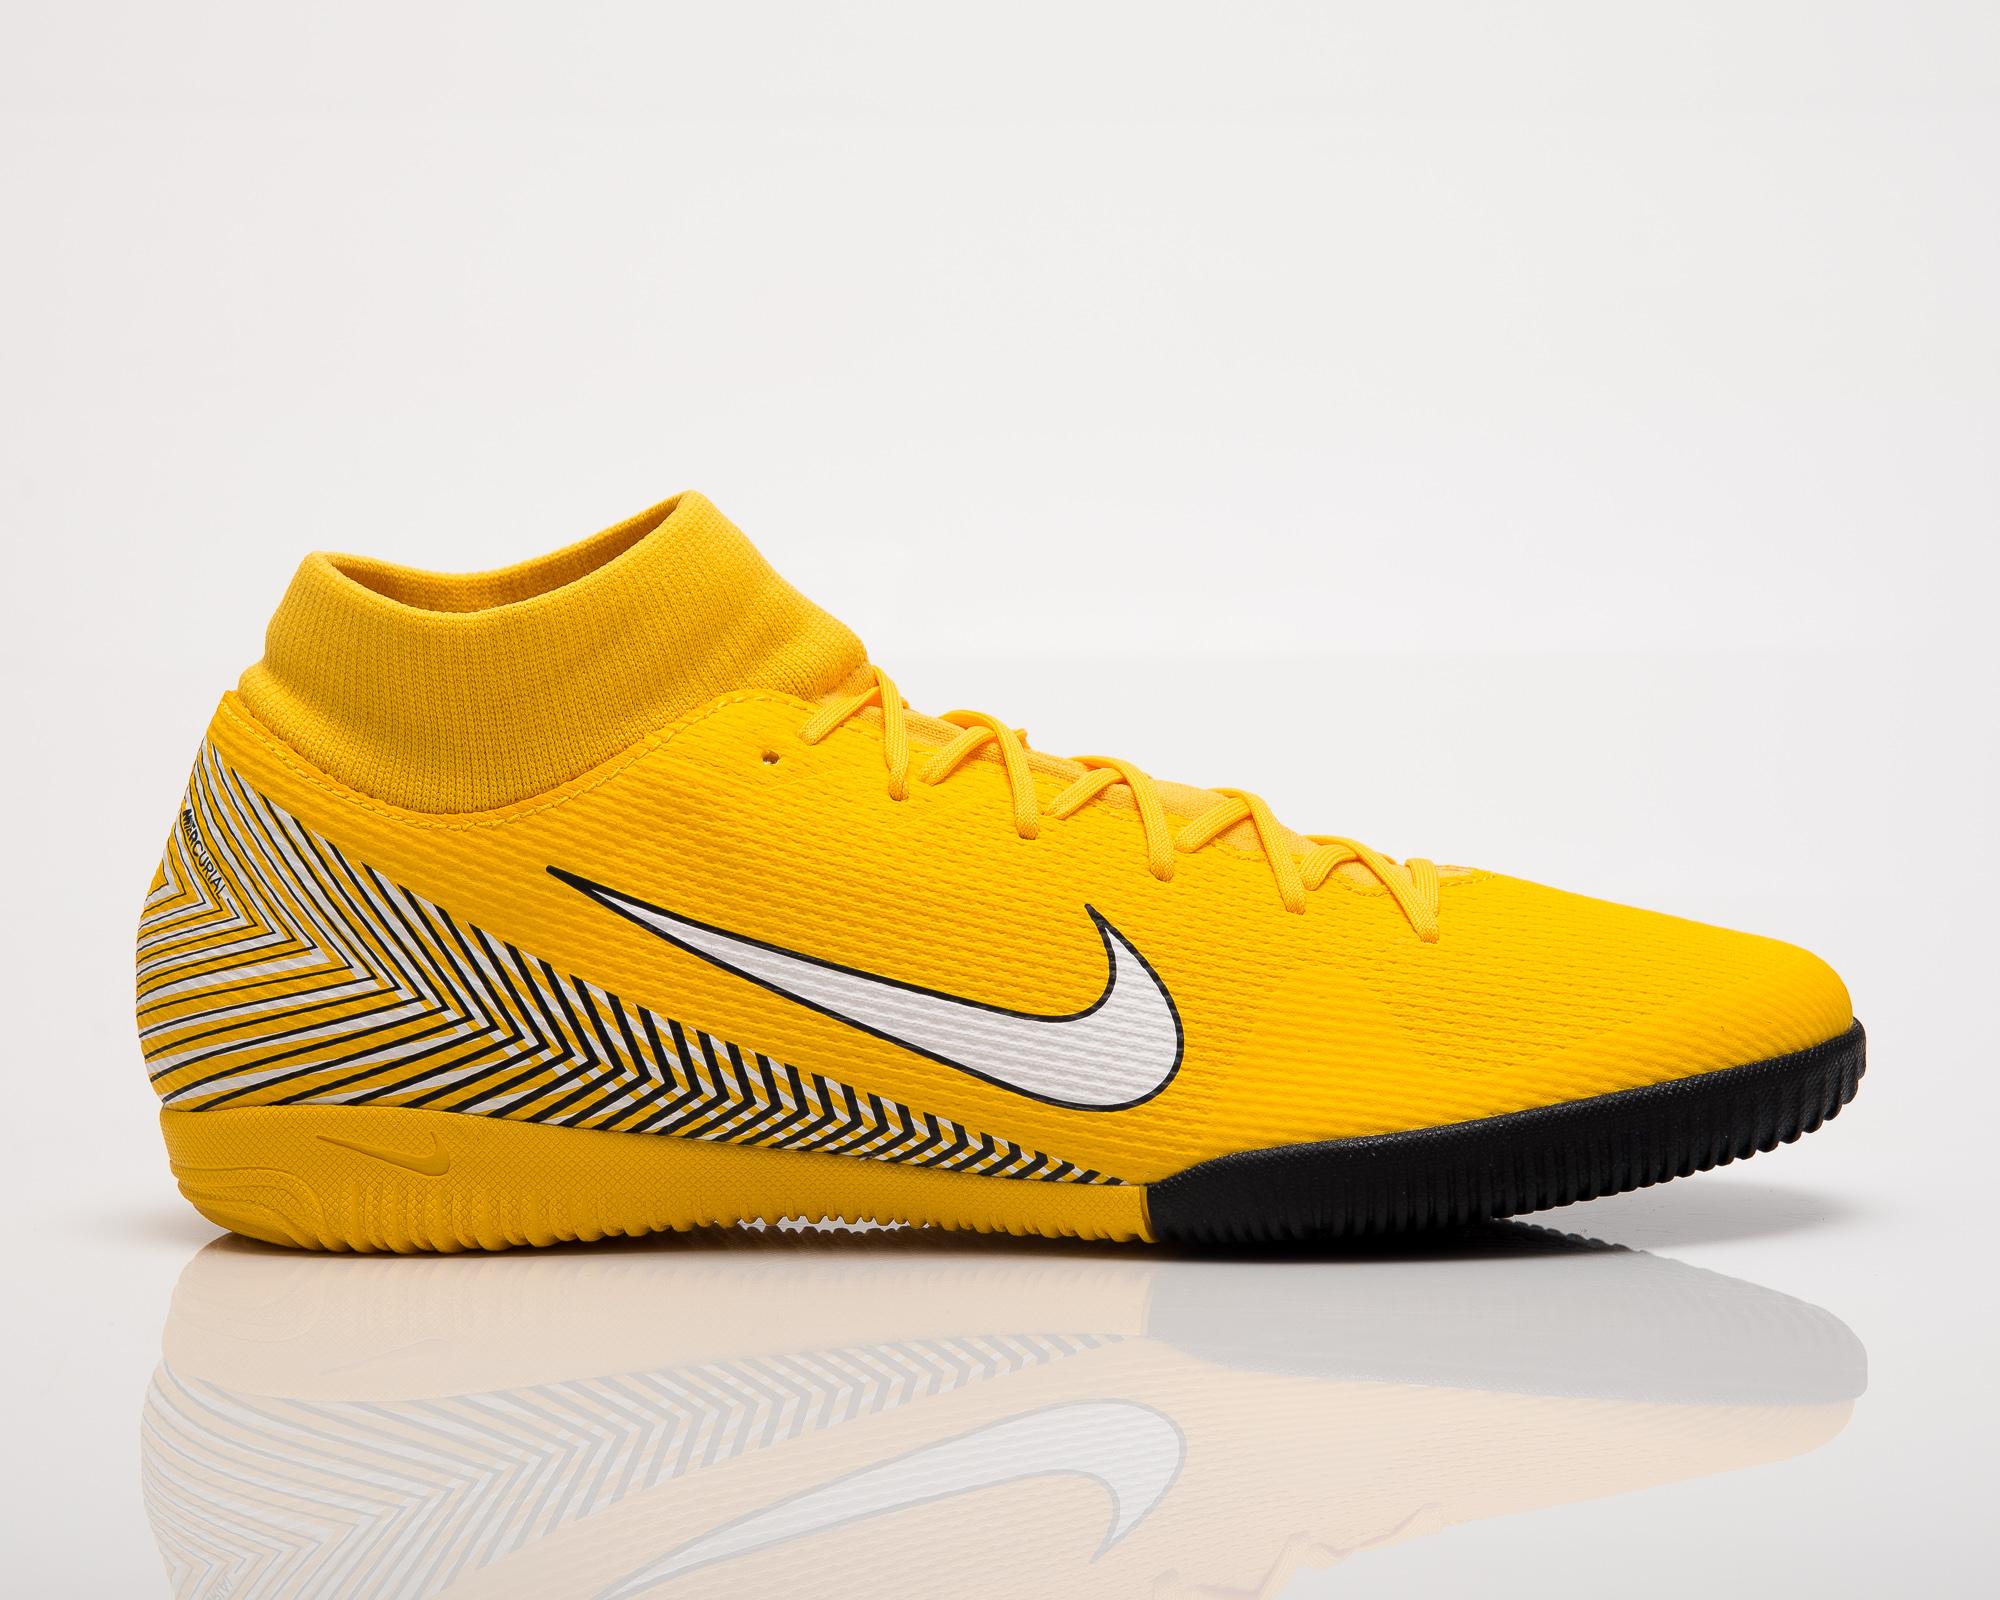 NIKEของแท้ รุ่น Superfly VI Academy Neymar Jr. รองเท้าฟุตซอลผู้ชาย สีเหลือง สวยมาก